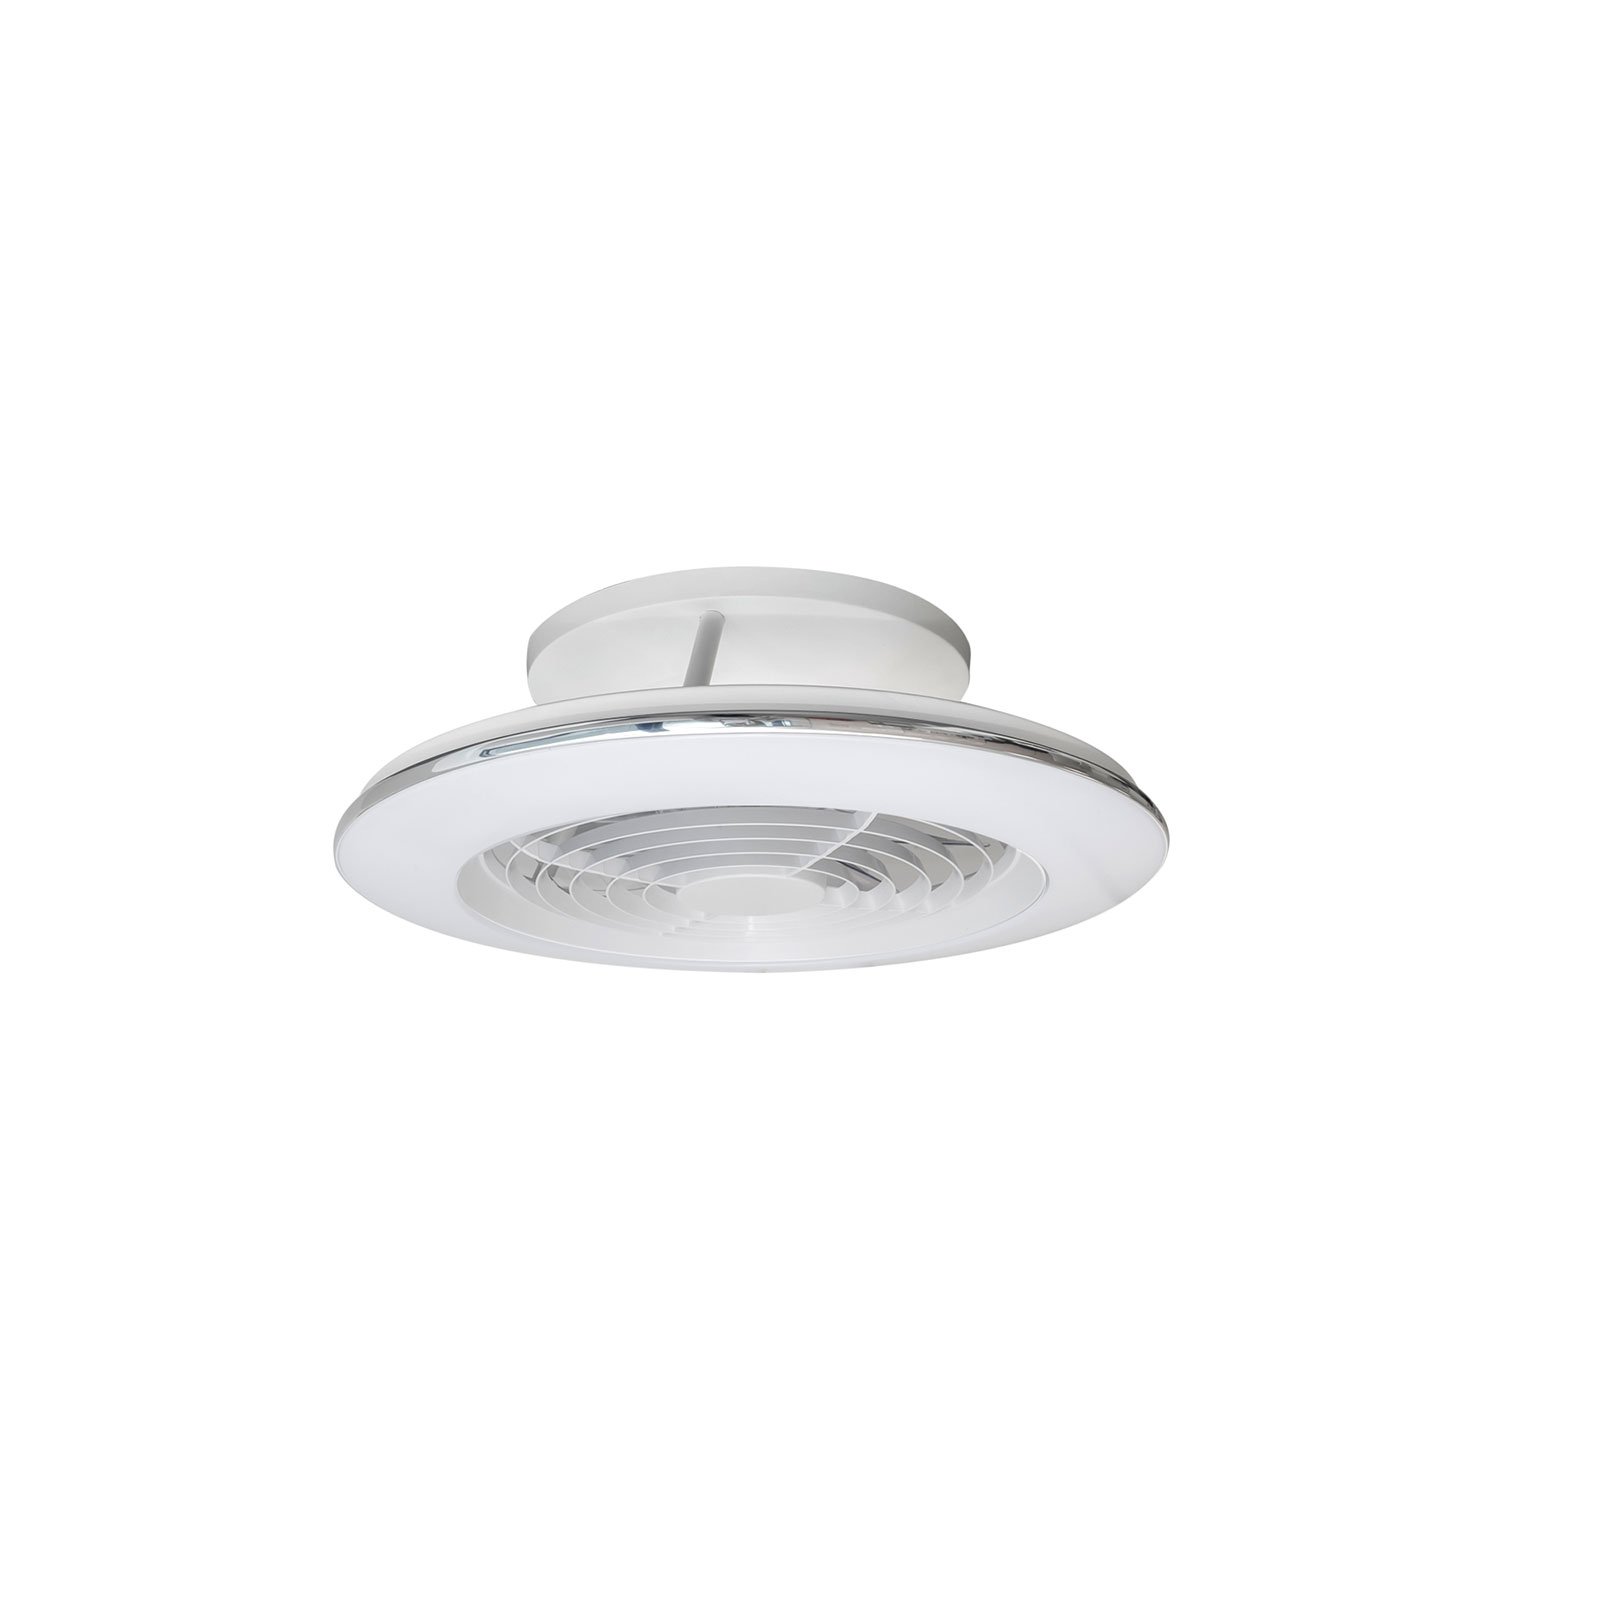 LED ceiling fan Alisio mini, white